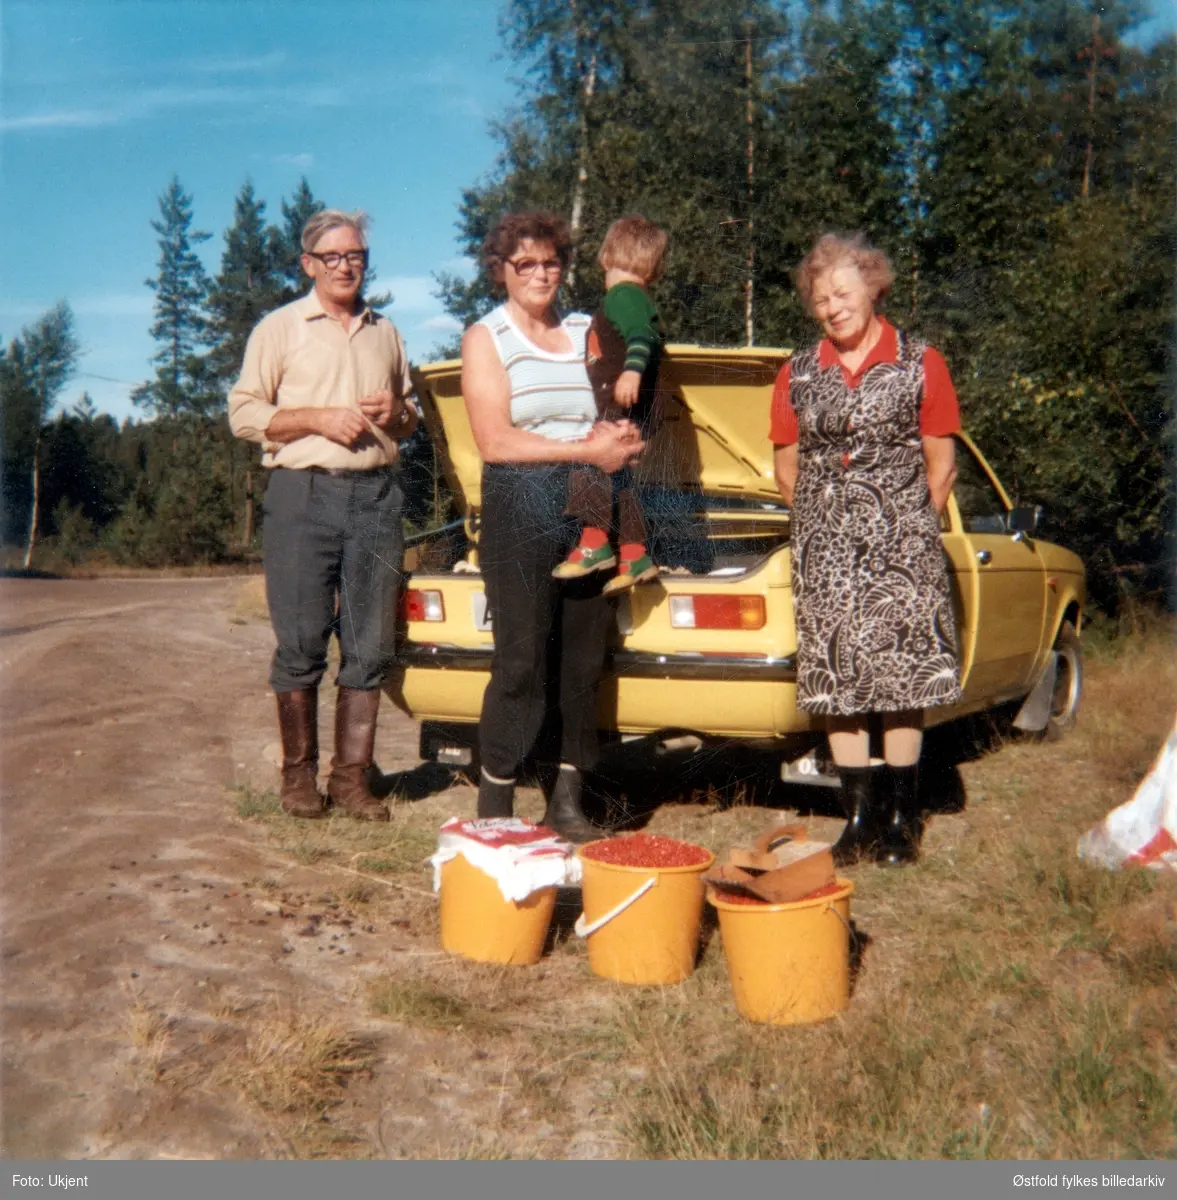 Tyttebærtur i Rømskog 1977. 
Fra venstre trøgstingene Rolf Strengen, Astrid, Laila (2 år) og Thorbjørg Haakaas med bøttene fulle. 
1977 var nok et godt tyttebærår. Bærtur til Rømskog eller Setskog var en del av innhøstingsarbeidet samtidig som det betød en avveksling i hverdagen.